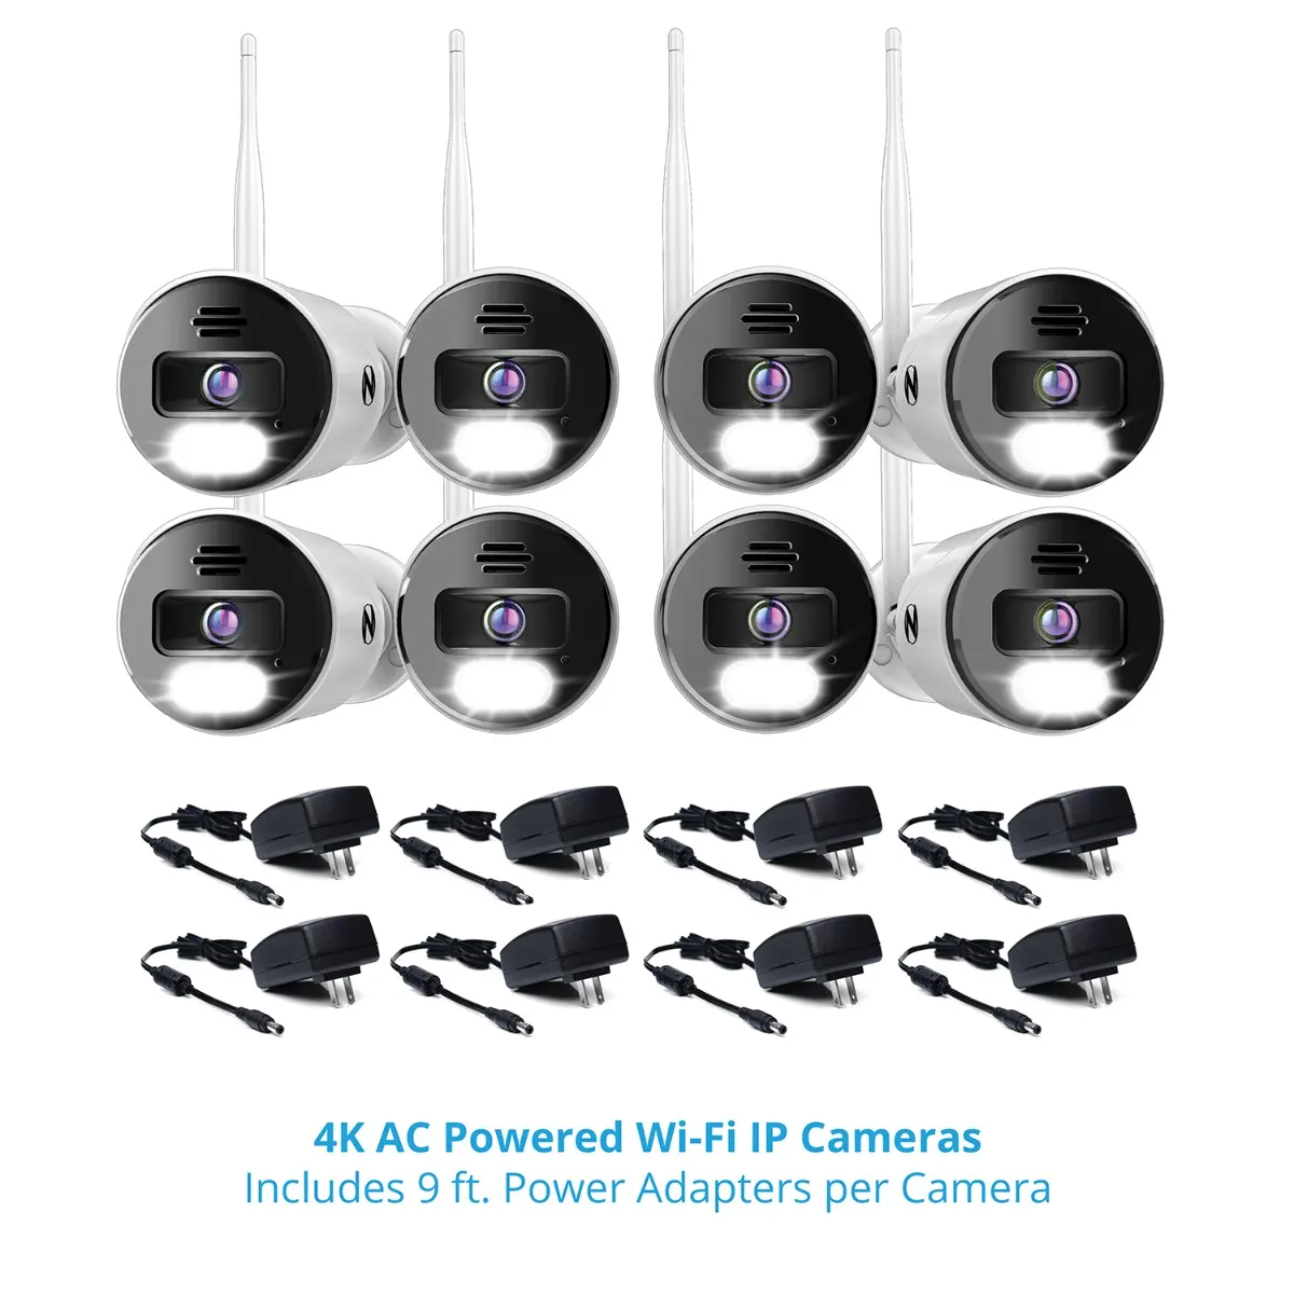 Wi-Fi Cameras – Night Owl SP, LLC